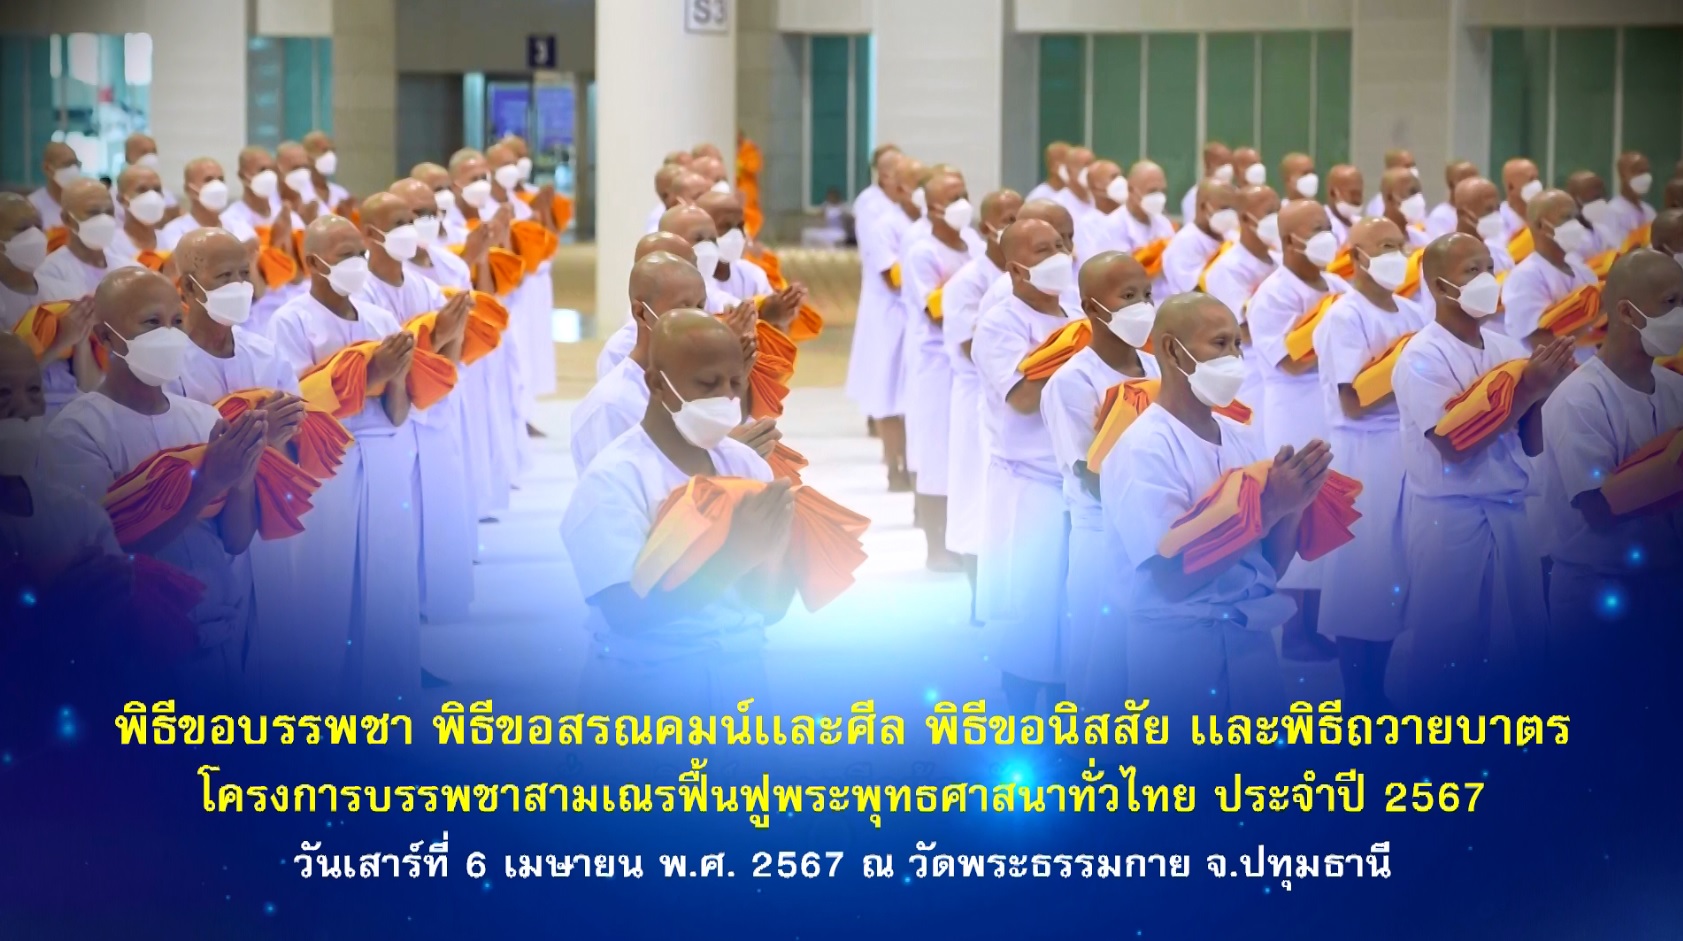 โครงการบรรพชาสามเณร ฟื้นฟูพระพุทธศาสนาทั่วไทย 2567